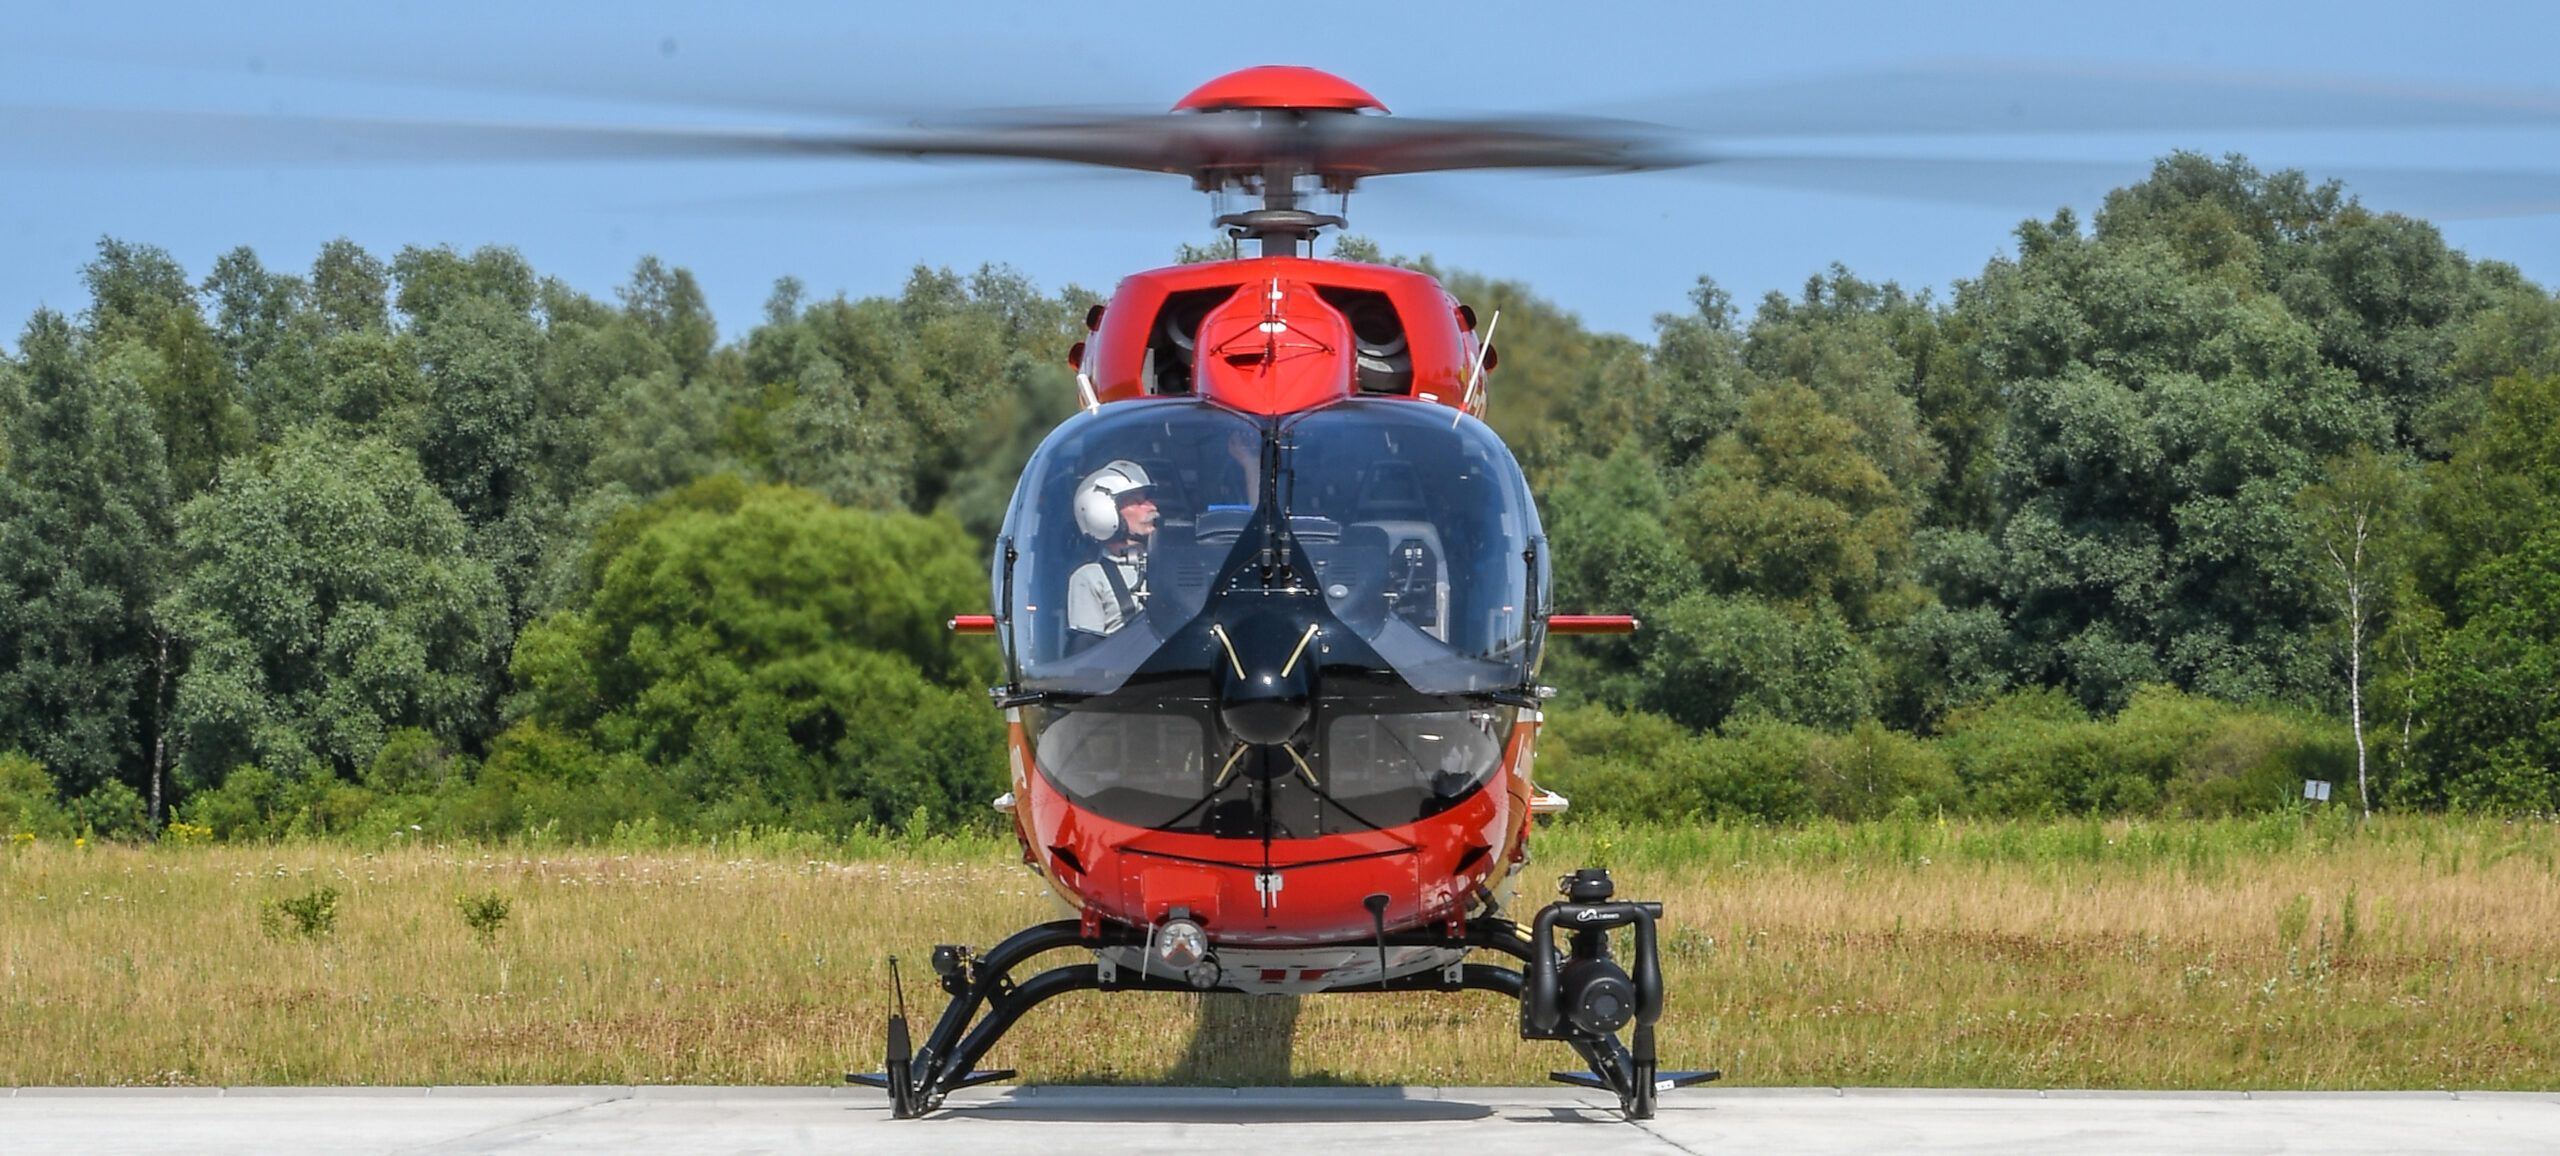 Seit Dienstag, dem 19. Juli, starten die Luftretter in Rendsburg mit einer H145 mit Fünfblattrotor, dem modernsten Rettungshubschrauber, den es derzeit in der zivilen Luftrettung gibt, zu ihren Einsätzen.